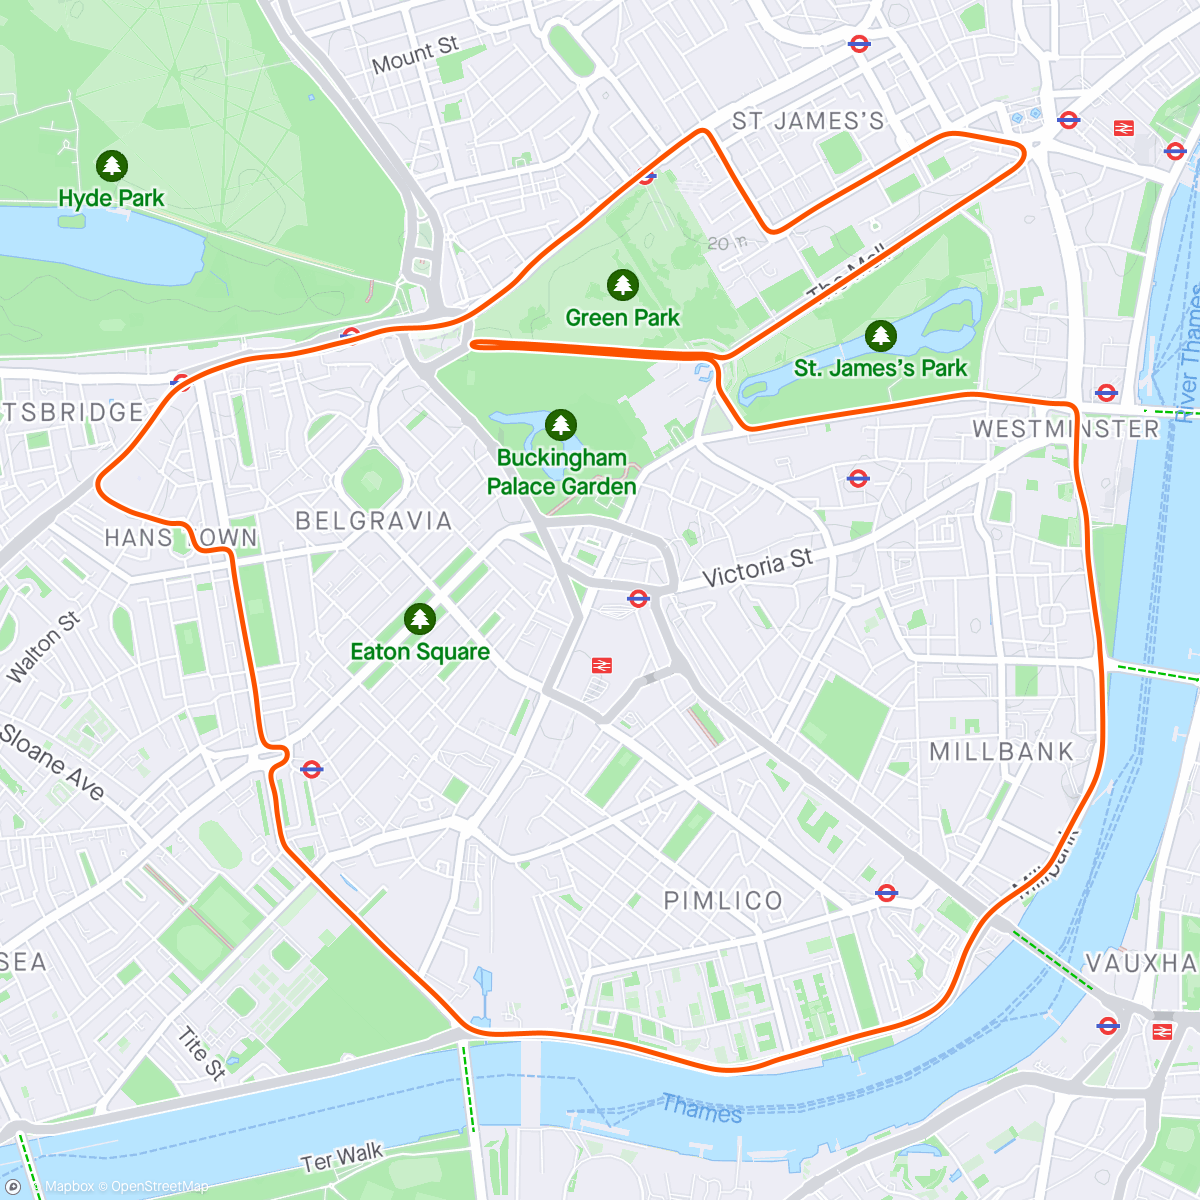 「Zwift - Greater London Flat in London」活動的地圖